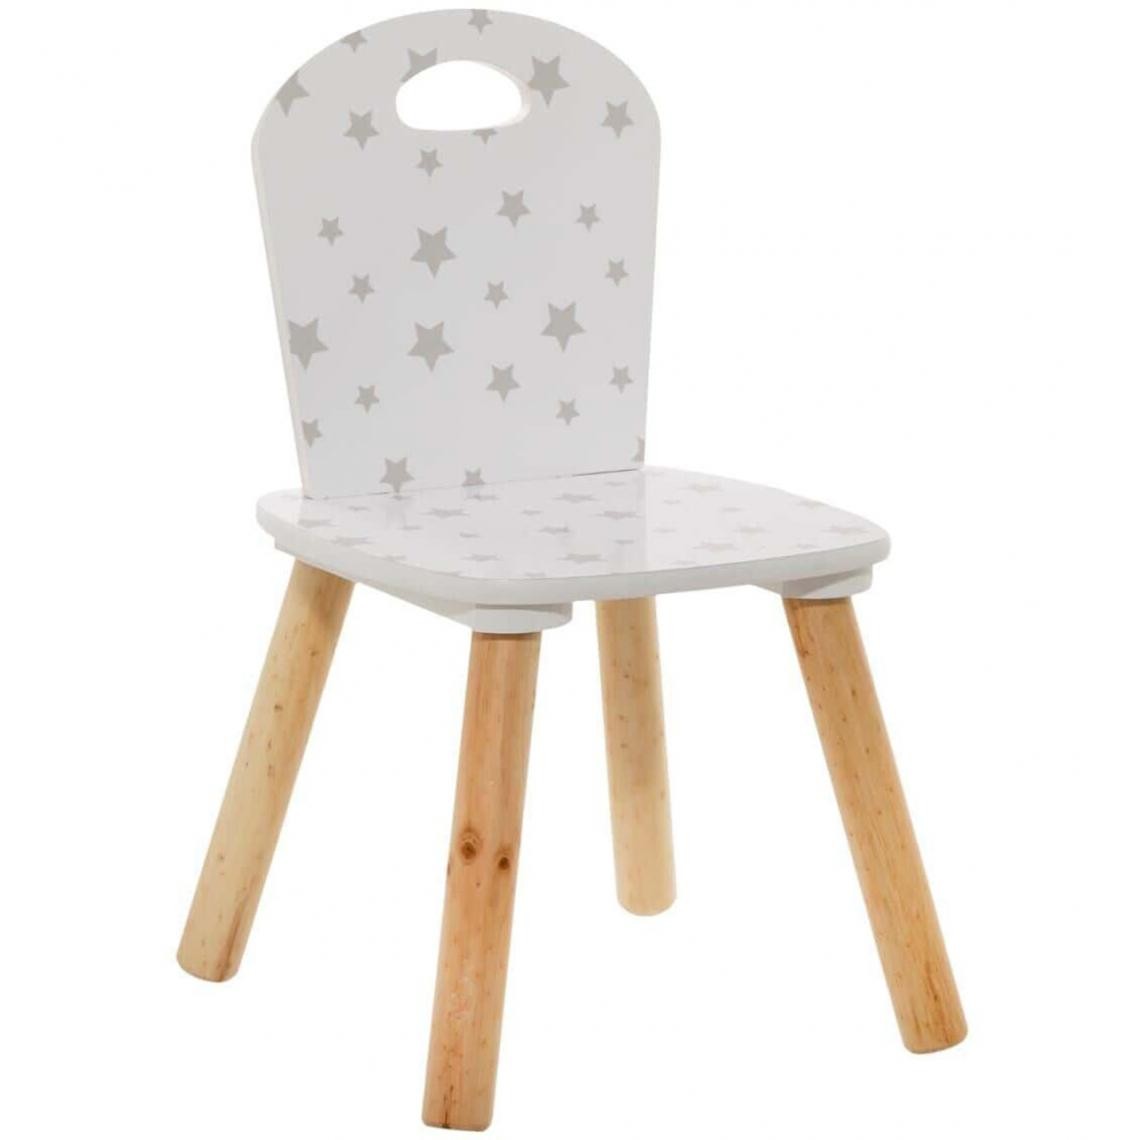 Pegane - Chaise enfant coloris blanc motif étoiles - Longueur 32 x Profondeur 31,5 x Hauteur 50 cm - Chaises